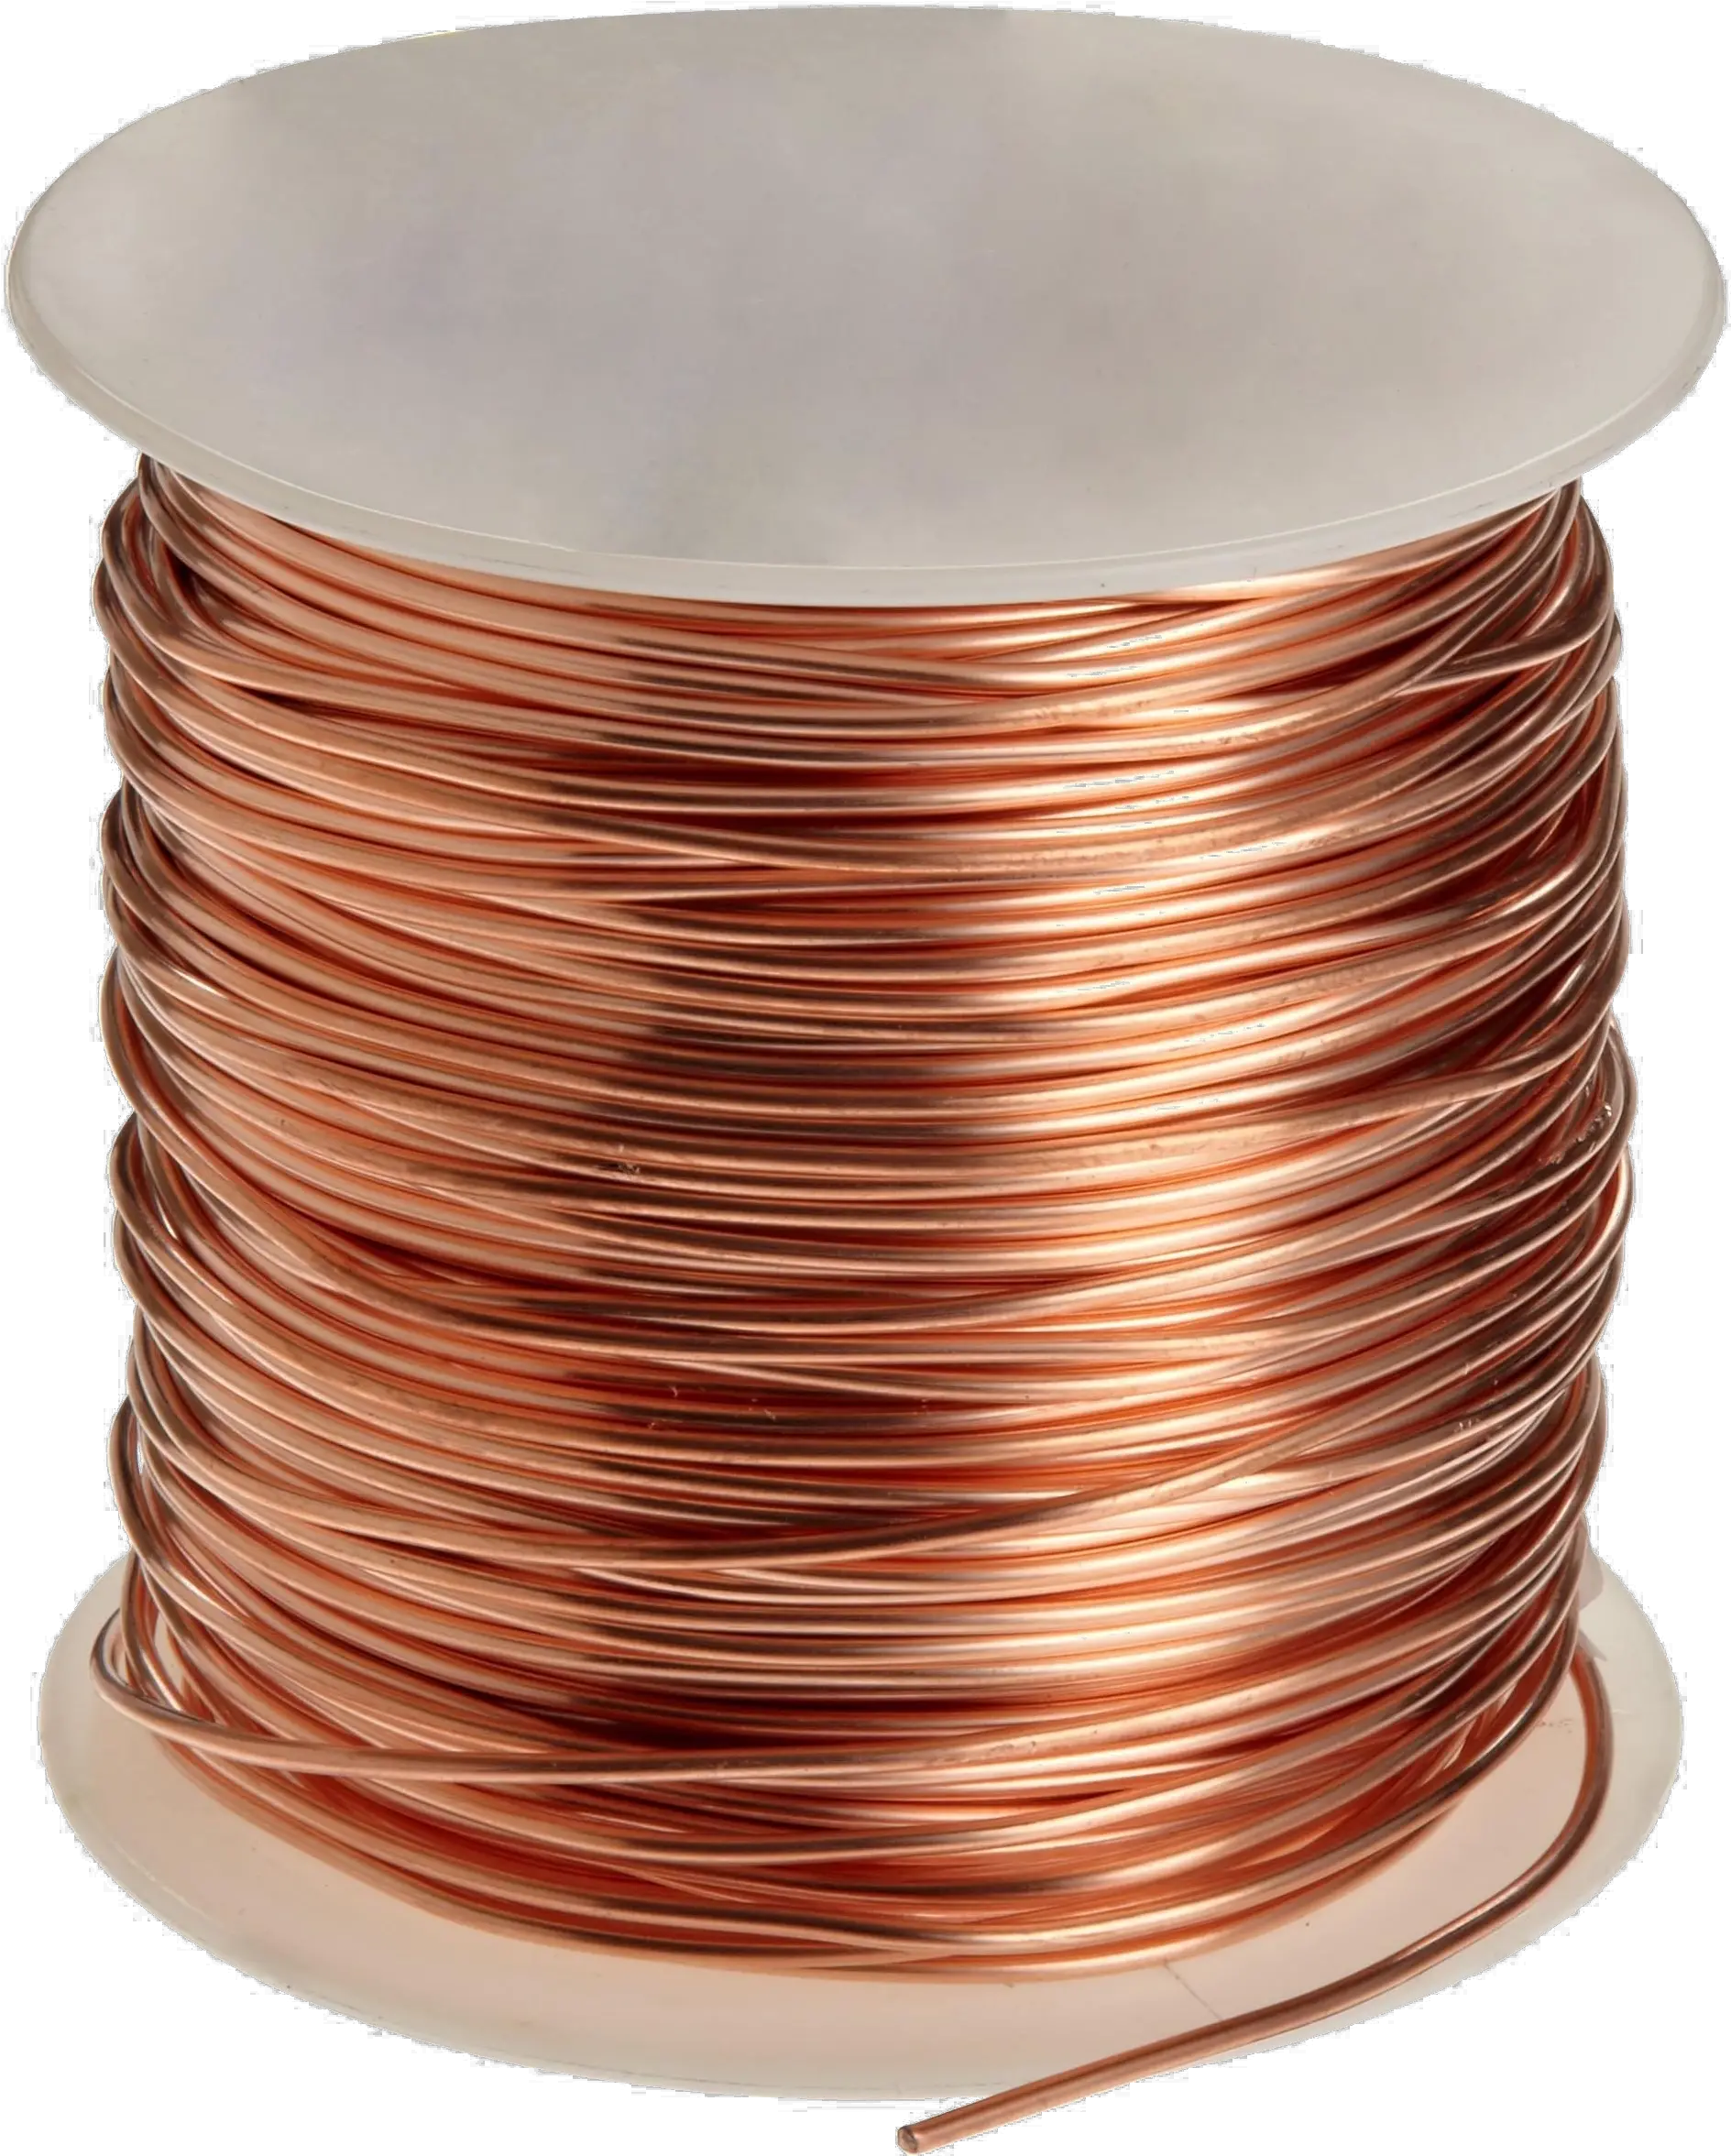 Download Copper Wire Transparent Png Dpc Copper Wire Png Copper Wire Wire Png